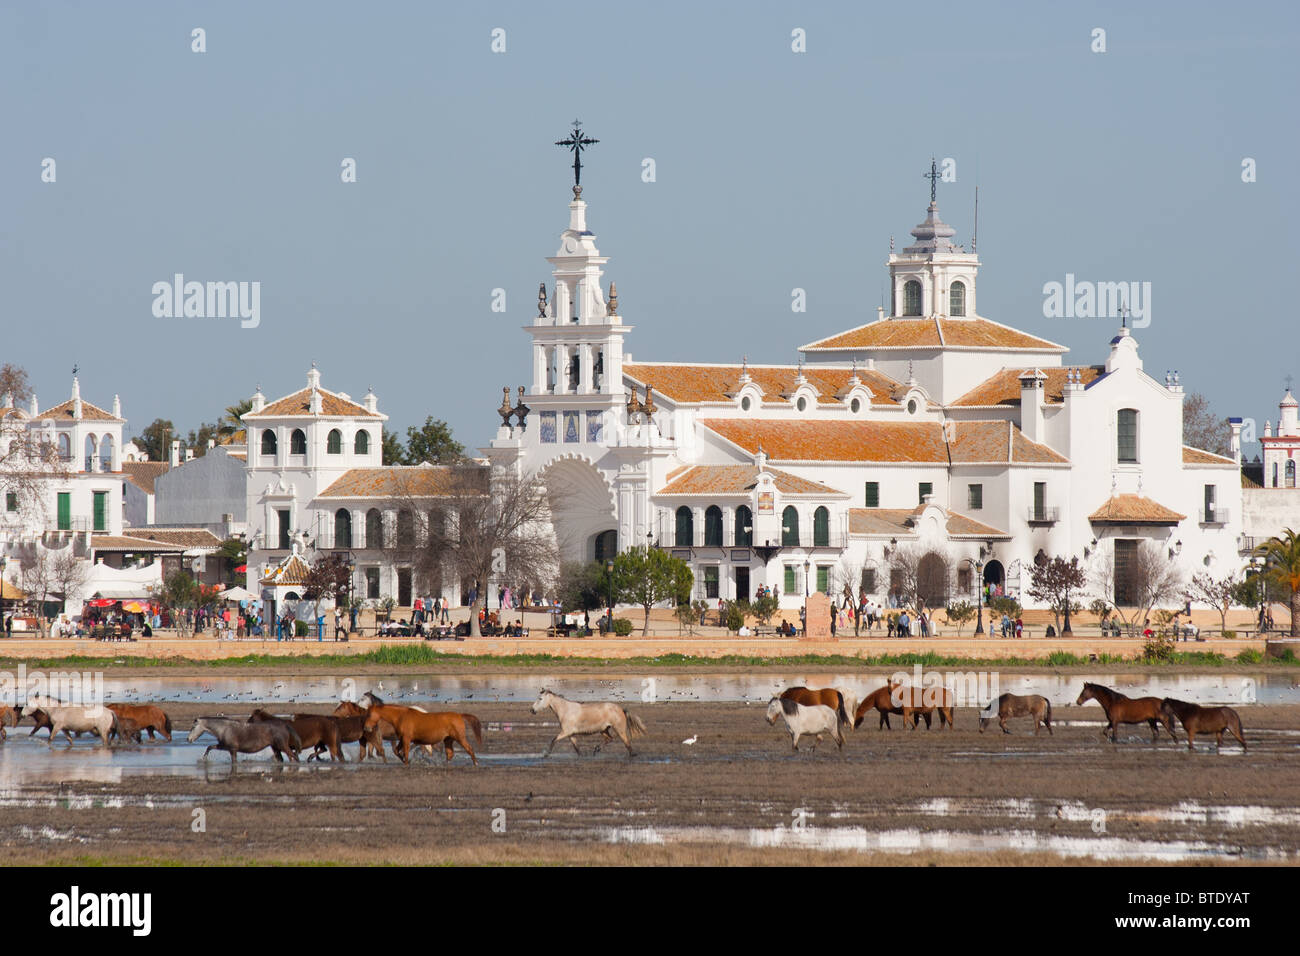 Les chevaux dans les marais en face du village d'El Rocio, Huelva, Espagne Banque D'Images